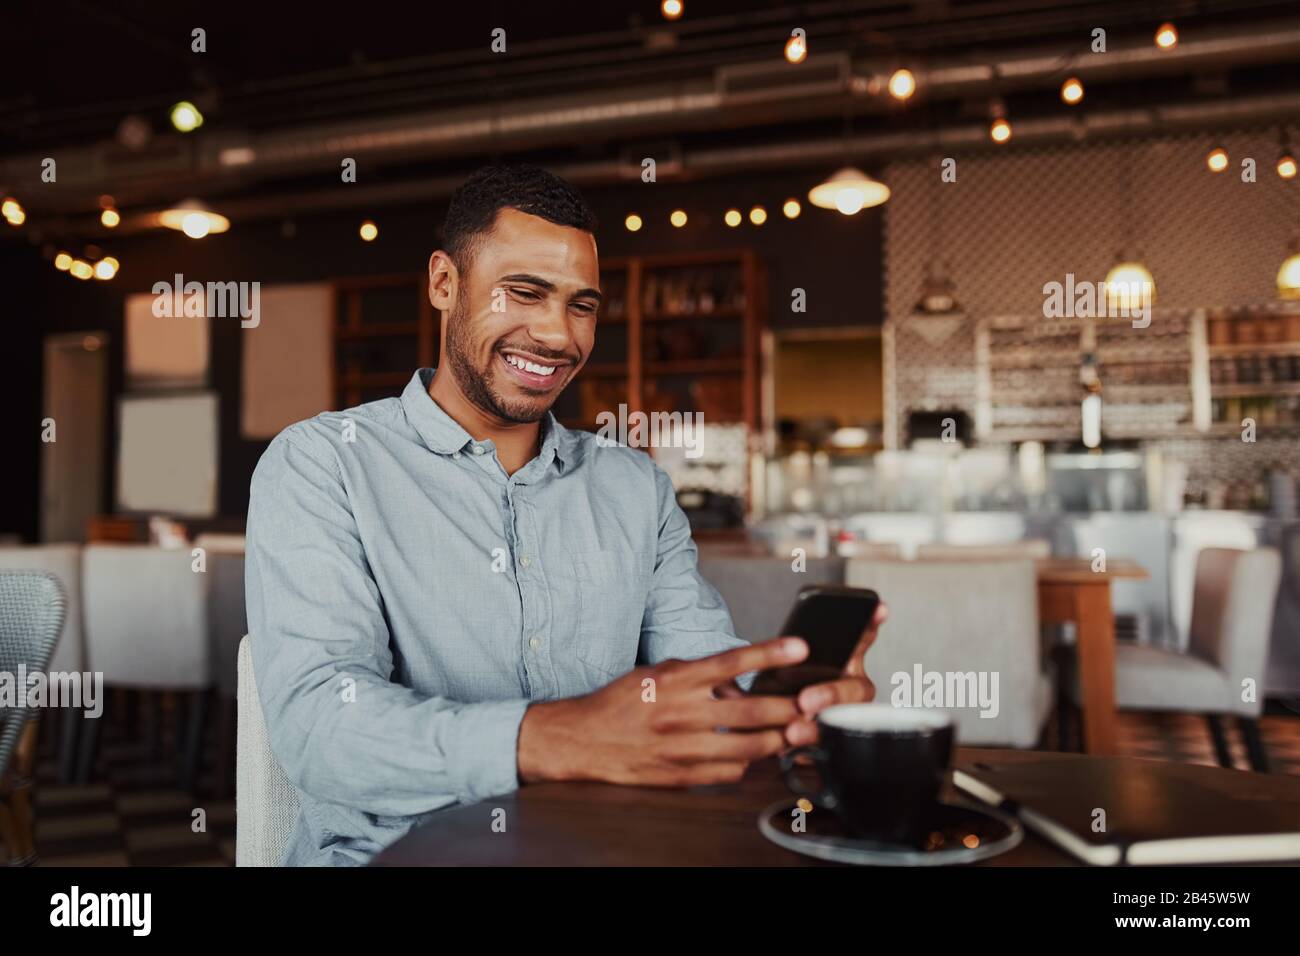 Allegro bel giovane africano che si rilassa in un moderno caffè usando il telefono cellulare mentre beve il caffè Foto Stock